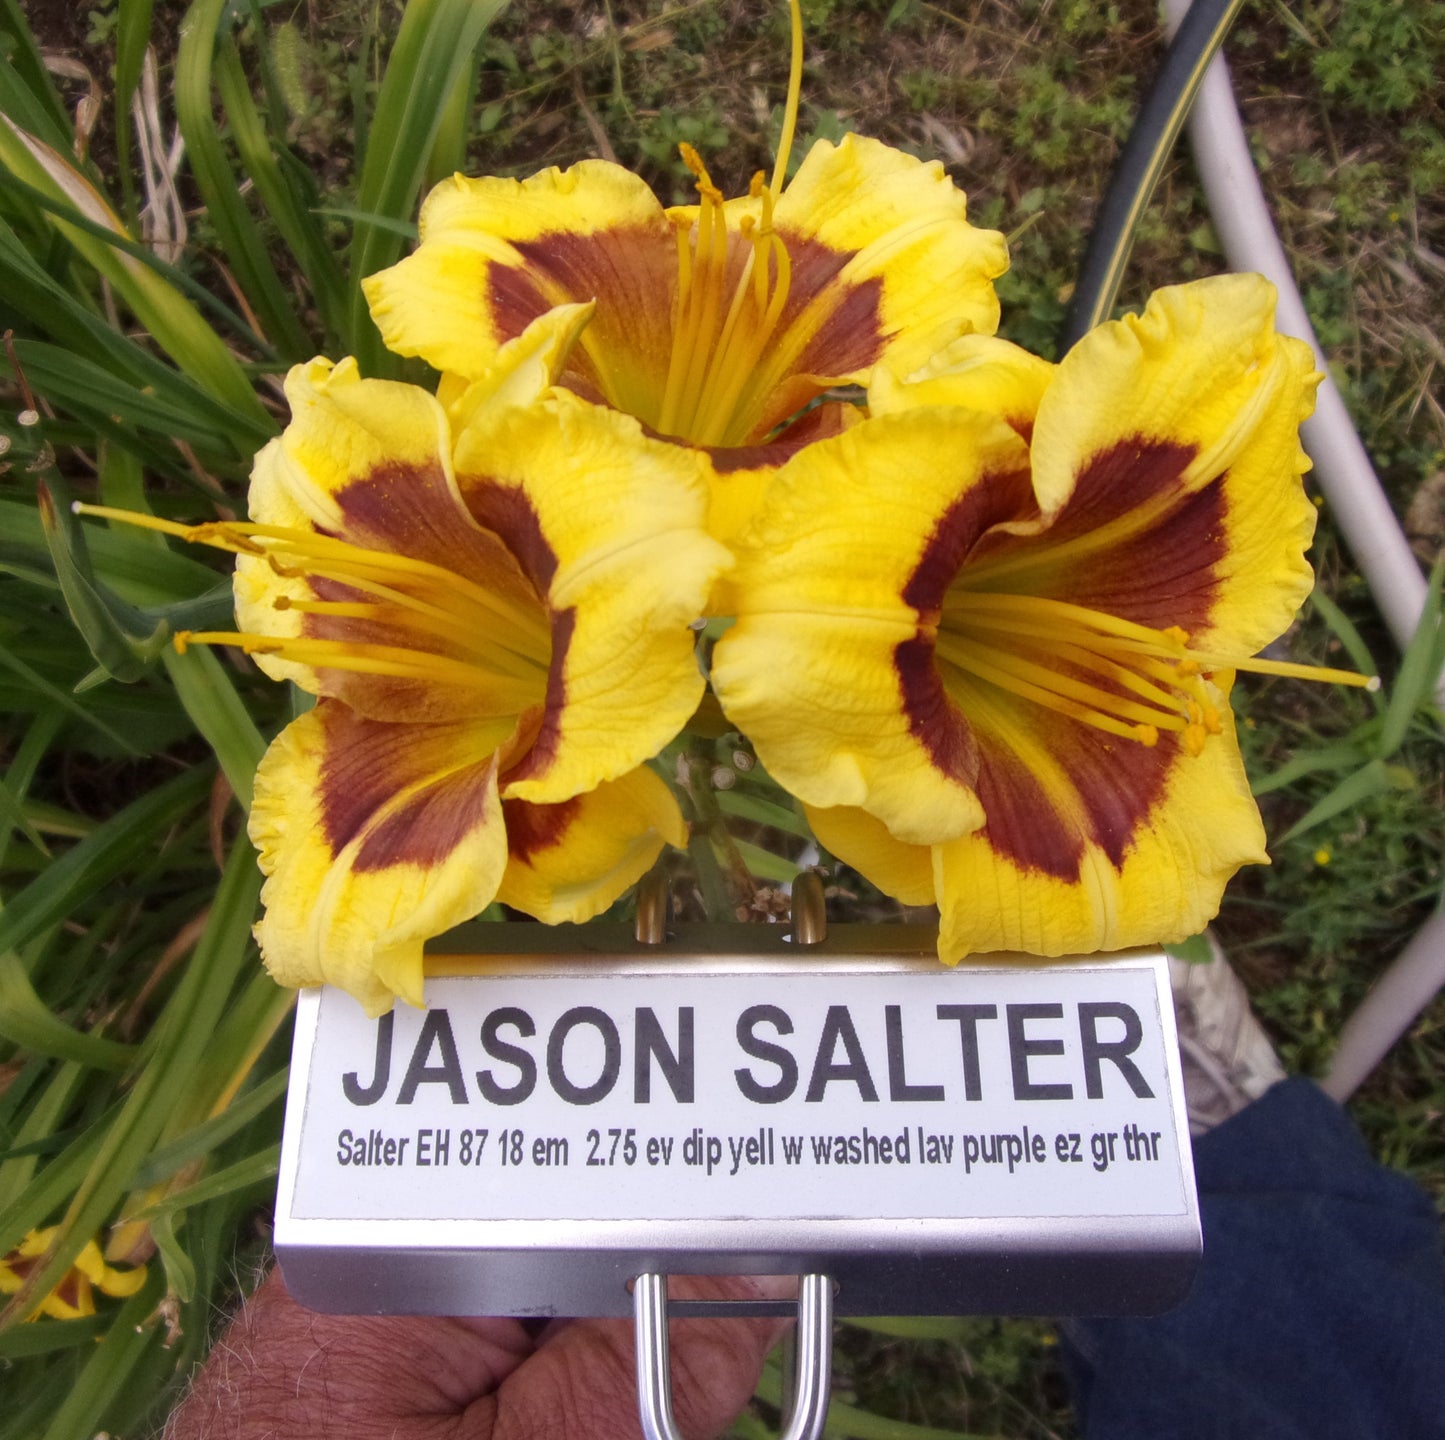 JASON SALTER